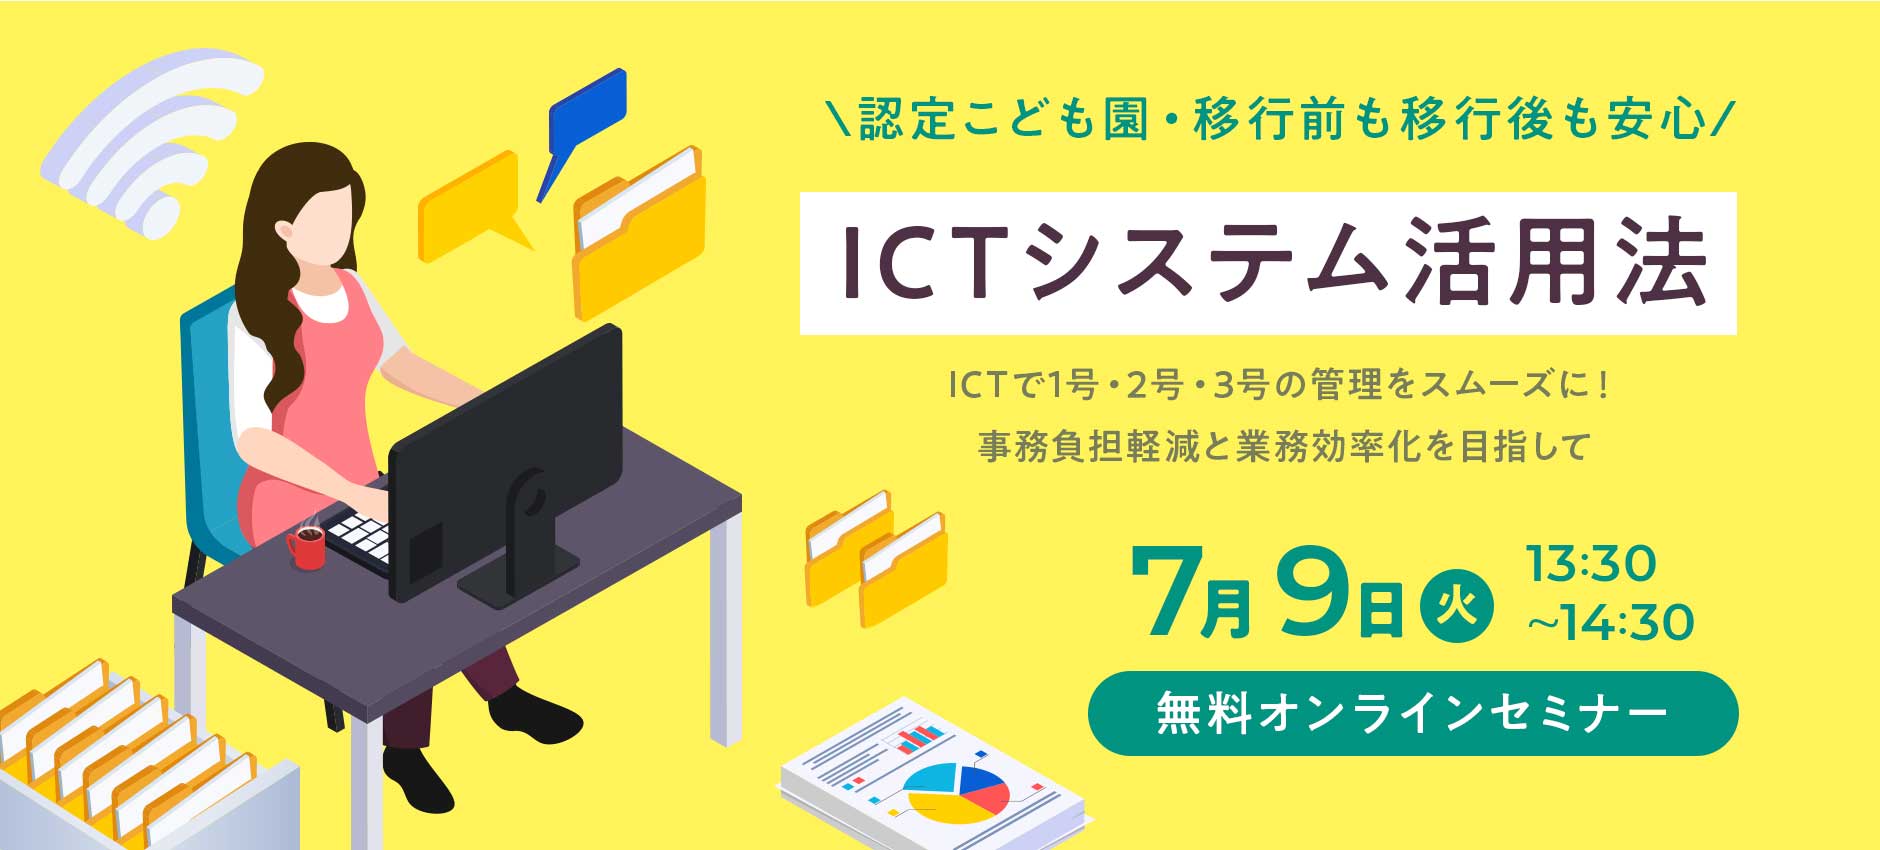 ICTシステム活用法